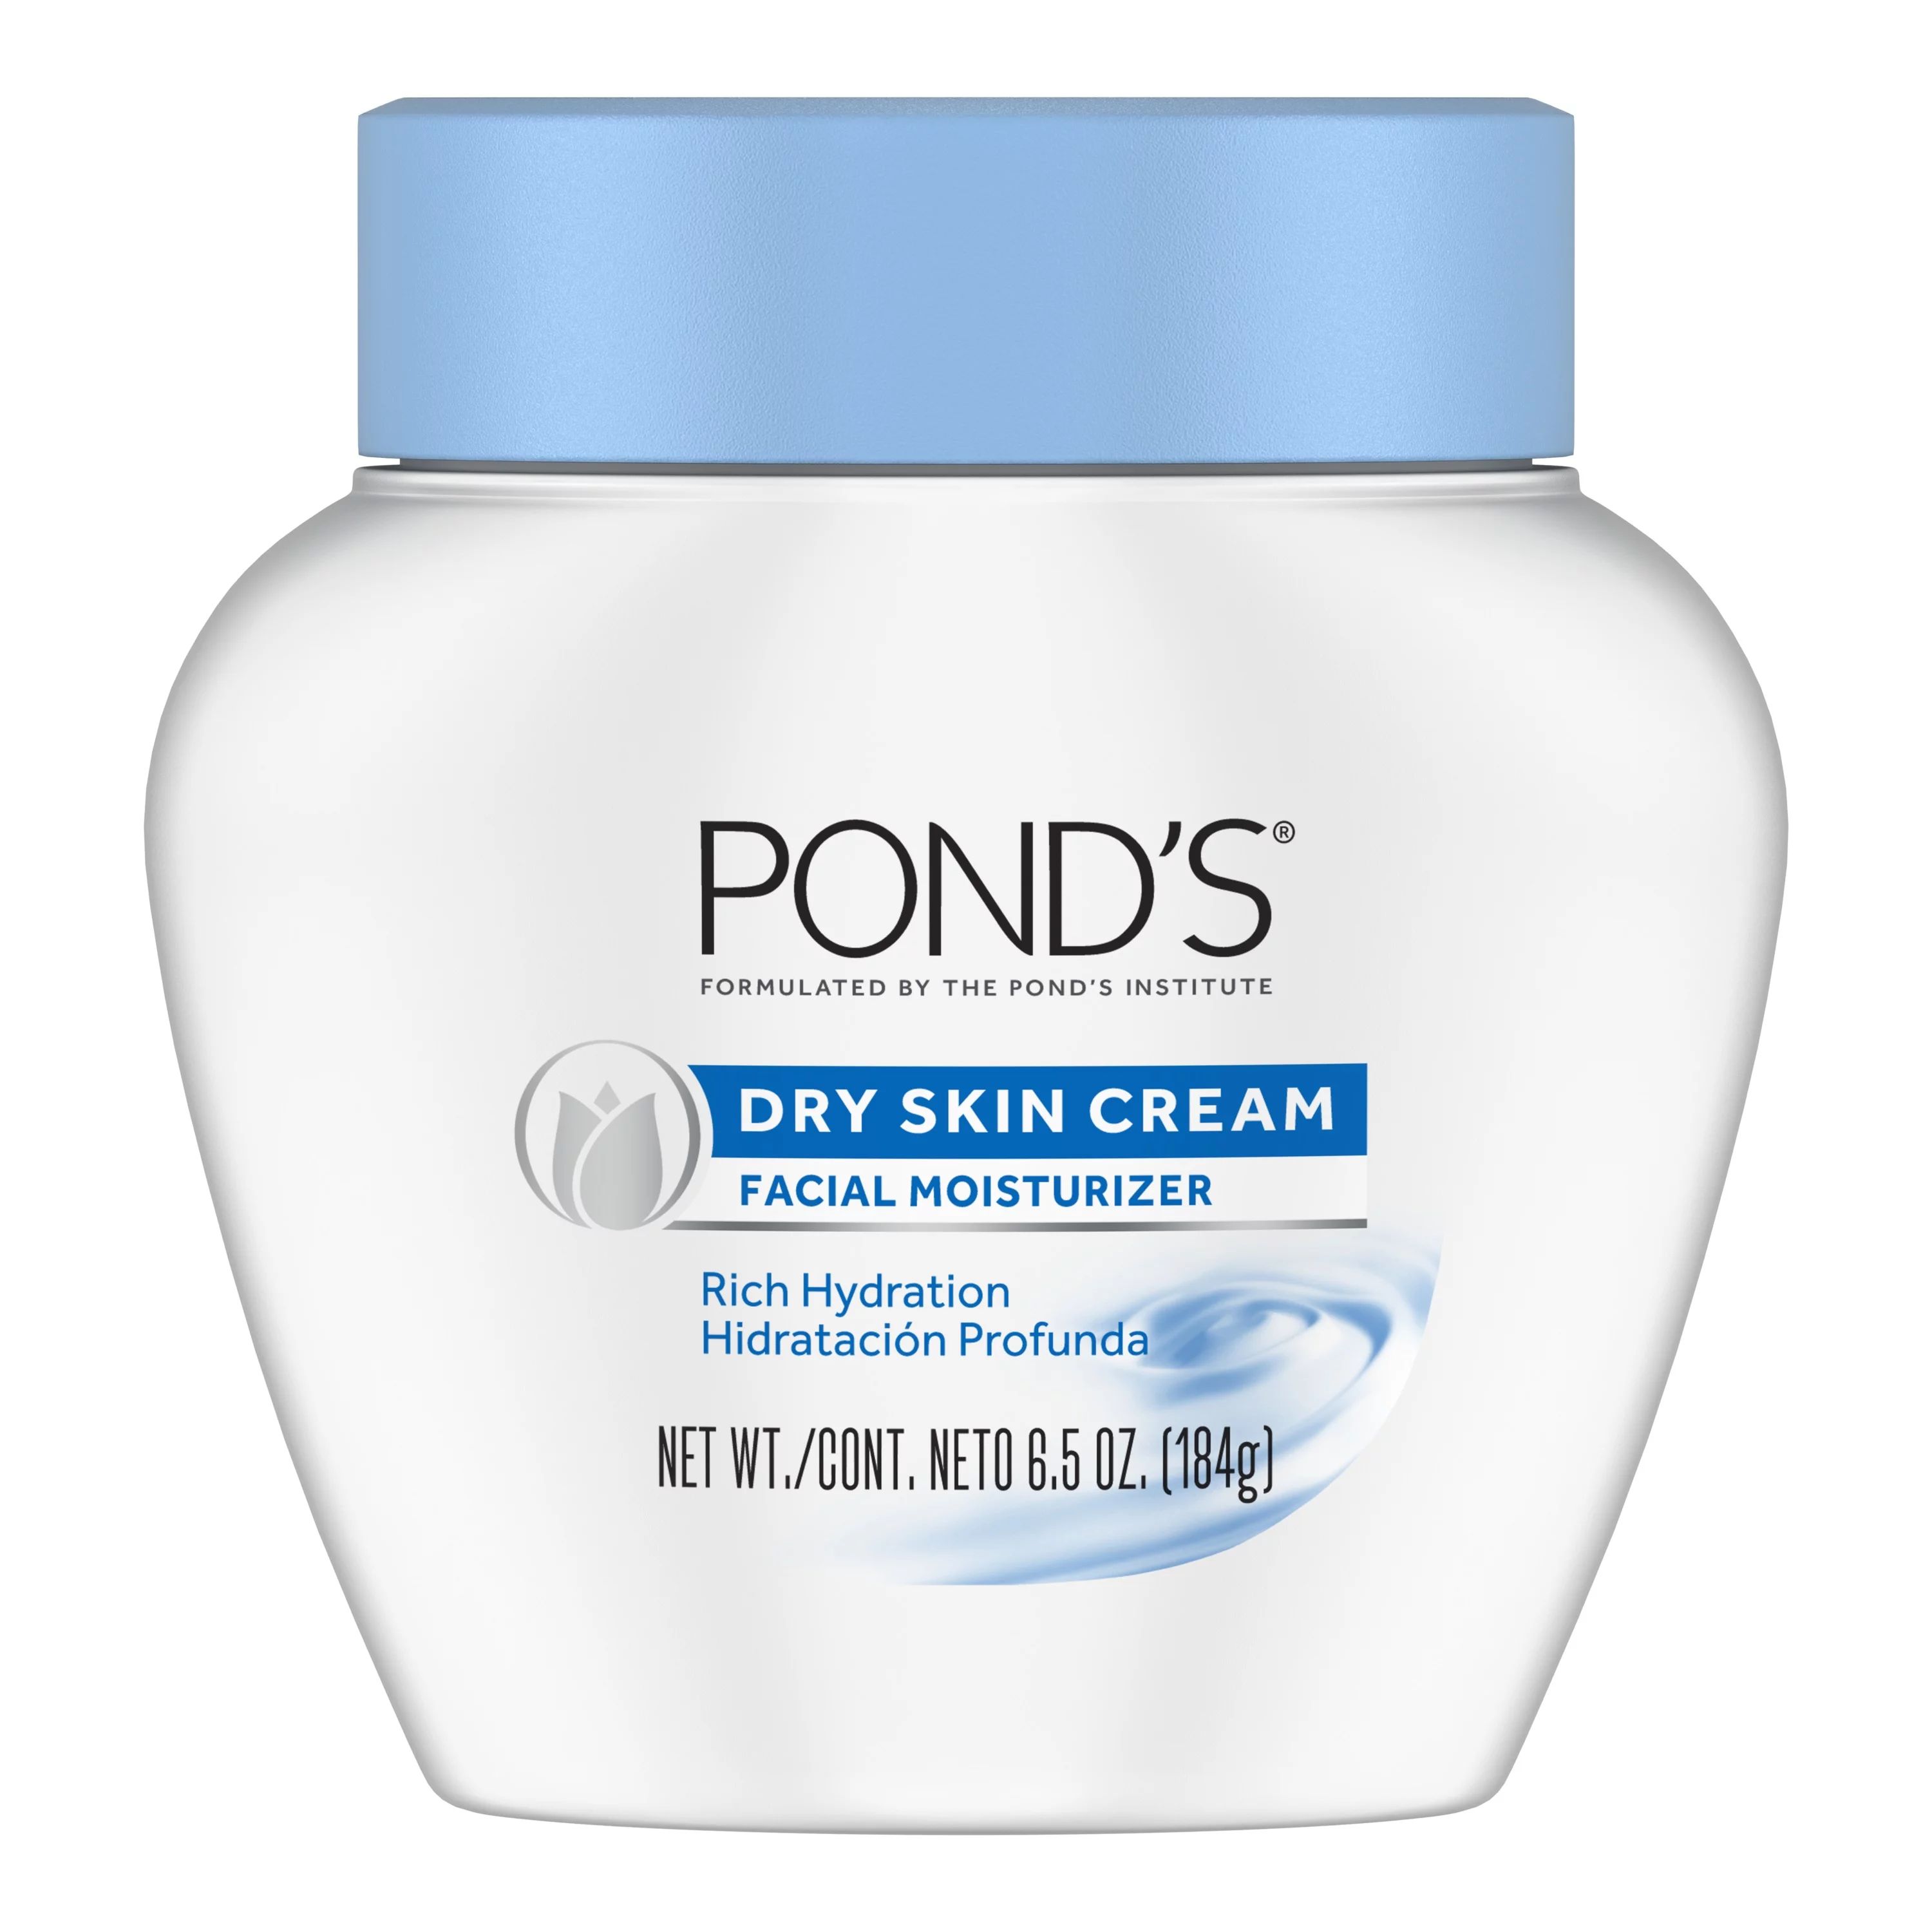 POND'S Dry Skin Facial Moisturizer Cream, 6.5 oz - Walmart.com | Walmart (US)